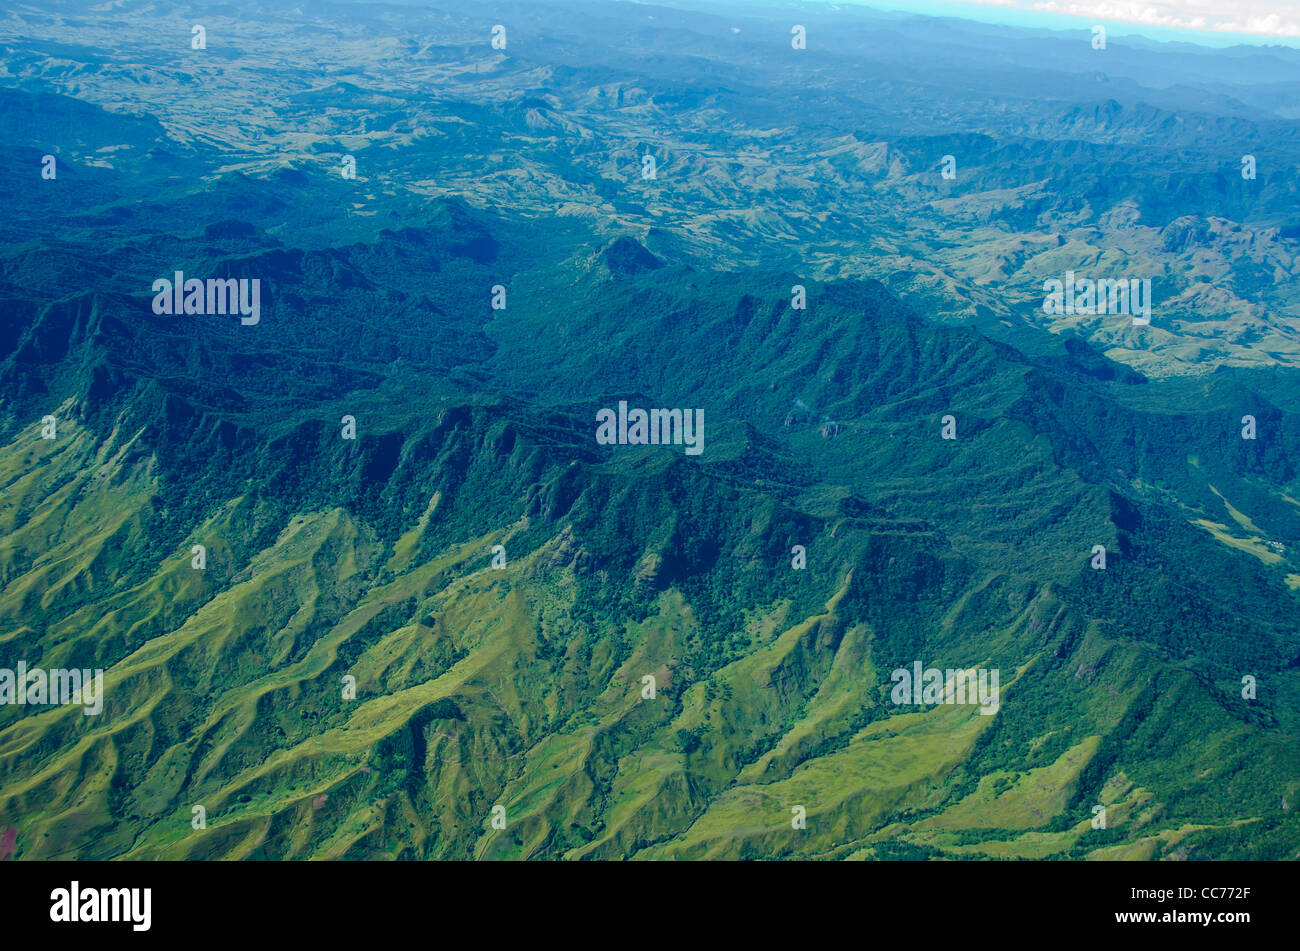 Antena de Fiji montañas verdes profundos valles abiertos espacio vacío Foto de stock